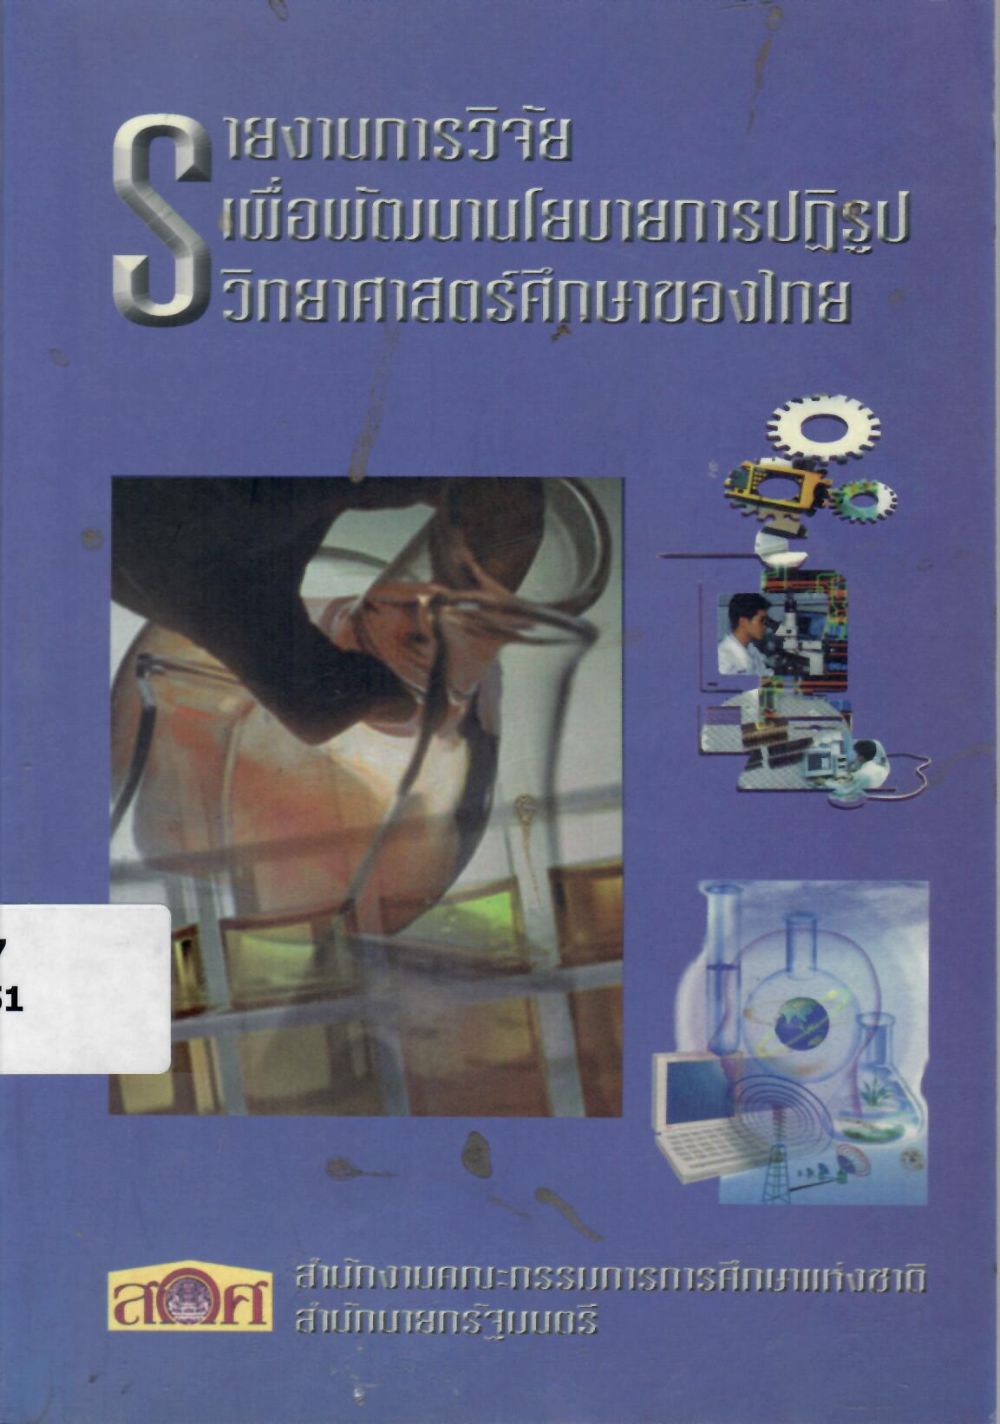 รายงานการวิจัยเพื่อพัฒนานโยบายการปฎิรูปวิทยาศาสตร์ศึกษาของไทย/ สำนักงานคณะกรรมการการศึกษาแห่งชาติ